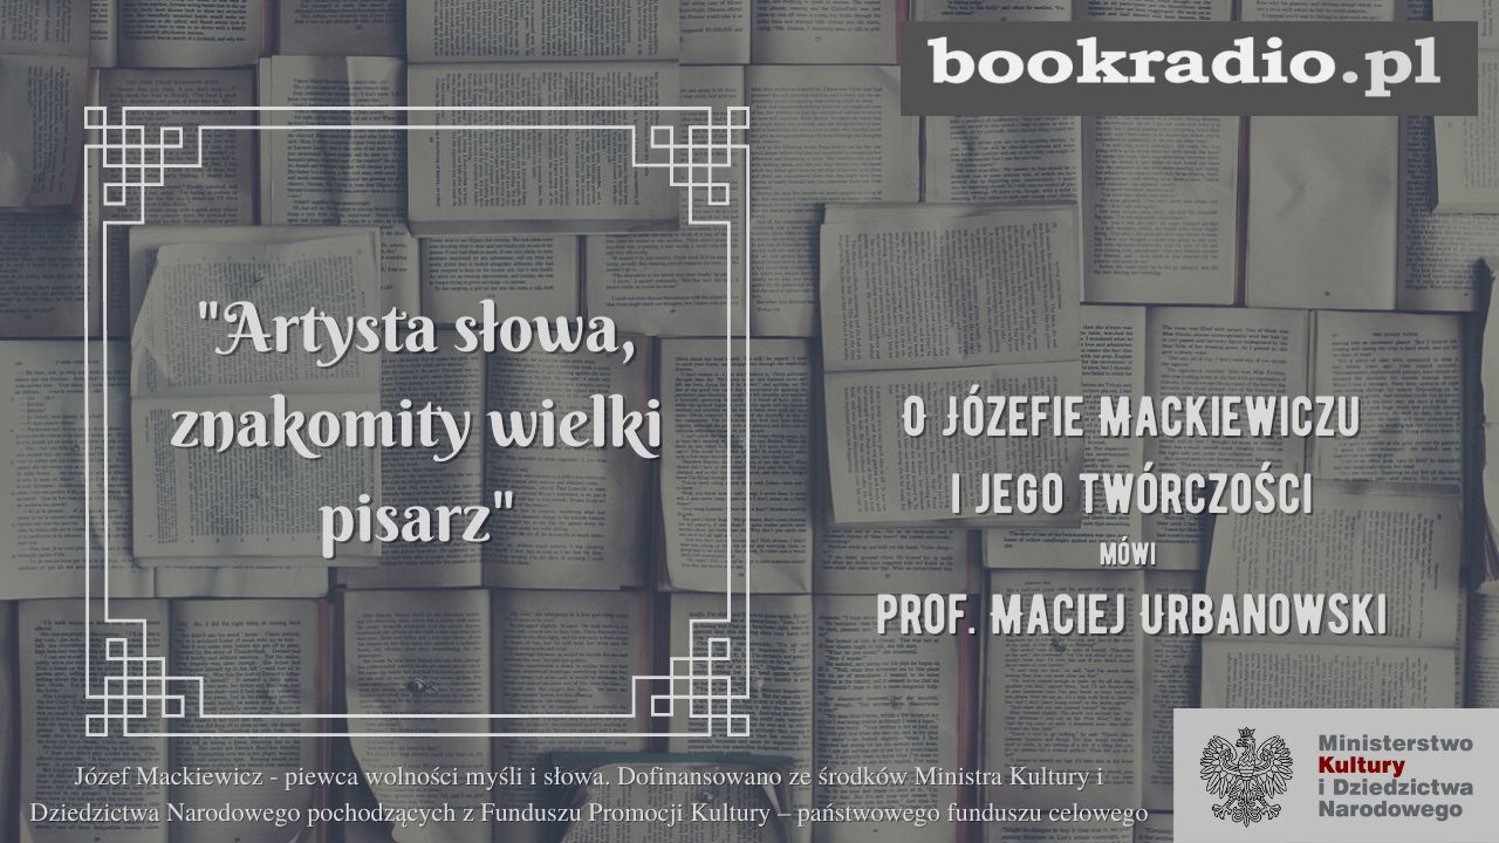 Józef Mackiewicz - Artysta słowa, znakomity wielki pisarz